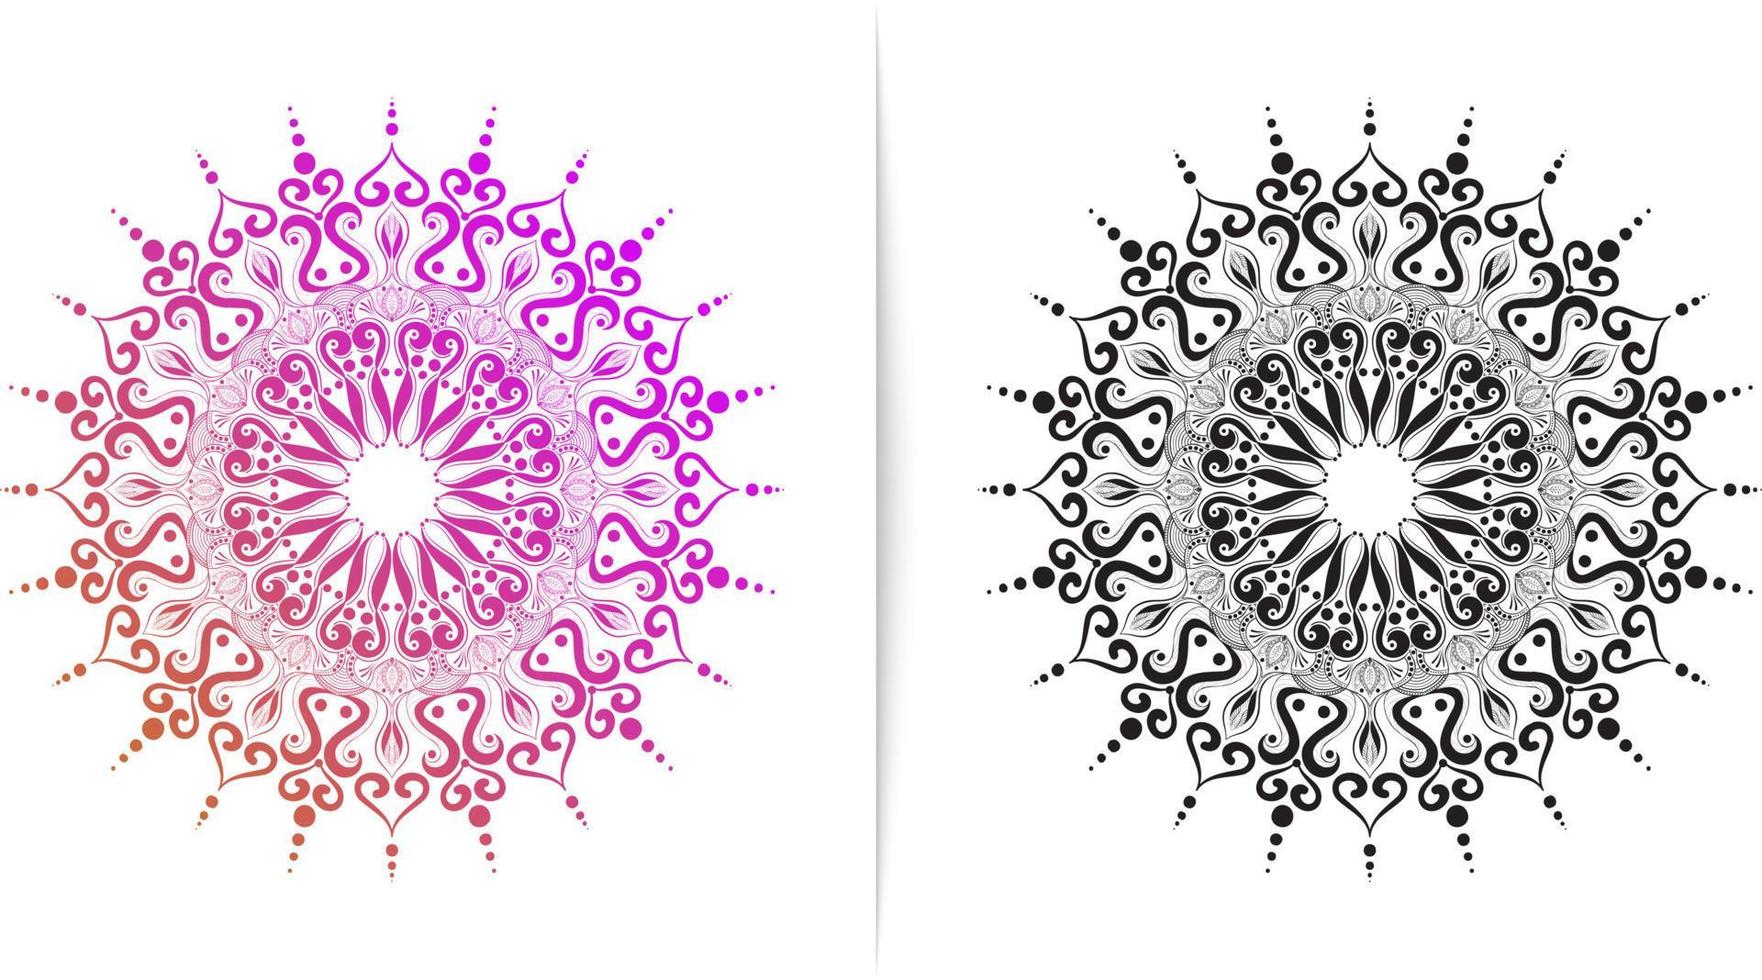 kreisförmige Muster, abstrakte und einfache Mandala-Motive, können für Dekorationsornamente, Henna, Tätowierungen und Malbuchumschläge angepasst werden vektor